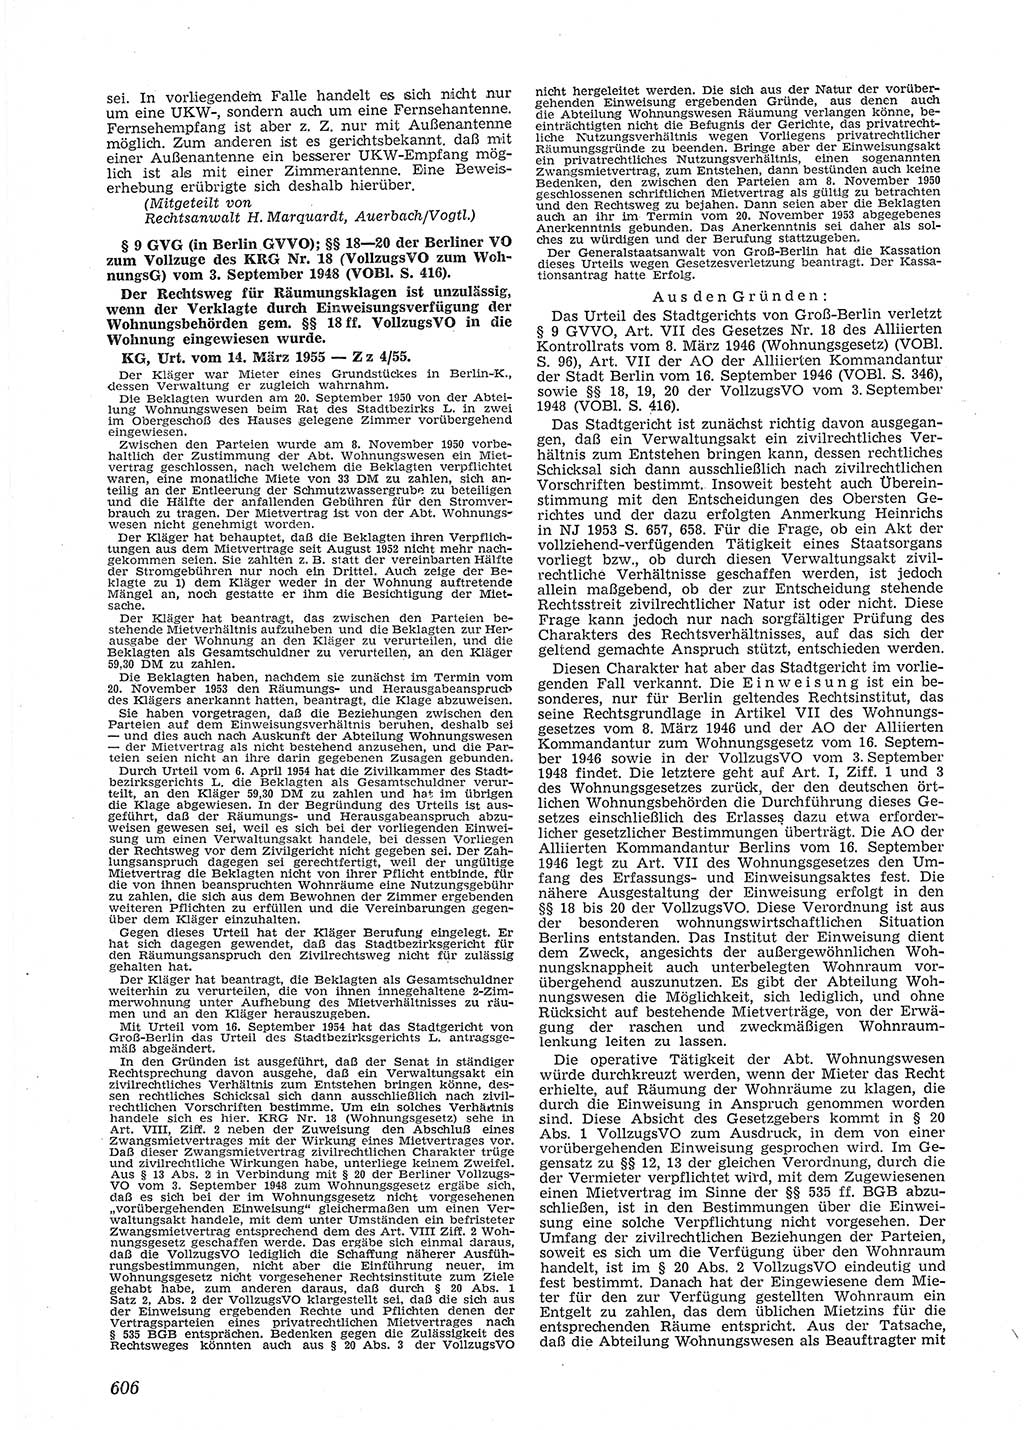 Neue Justiz (NJ), Zeitschrift für Recht und Rechtswissenschaft [Deutsche Demokratische Republik (DDR)], 9. Jahrgang 1955, Seite 606 (NJ DDR 1955, S. 606)